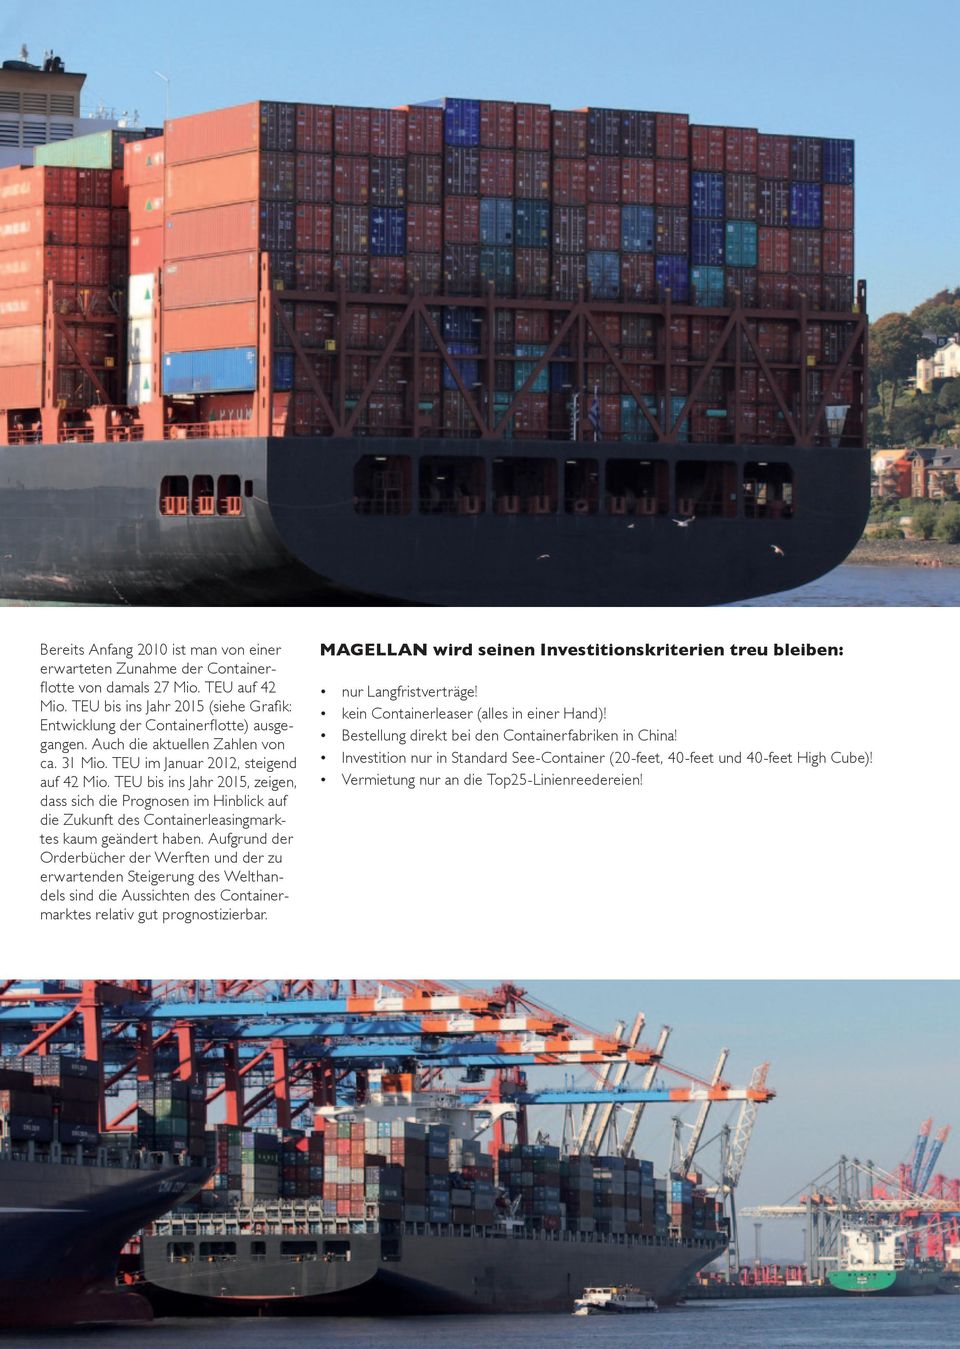 TEU bis ins Jahr 2015, zeigen, dass sich die Prognosen im Hinblick auf die Zukunft des Containerleasingmarktes kaum geändert haben.